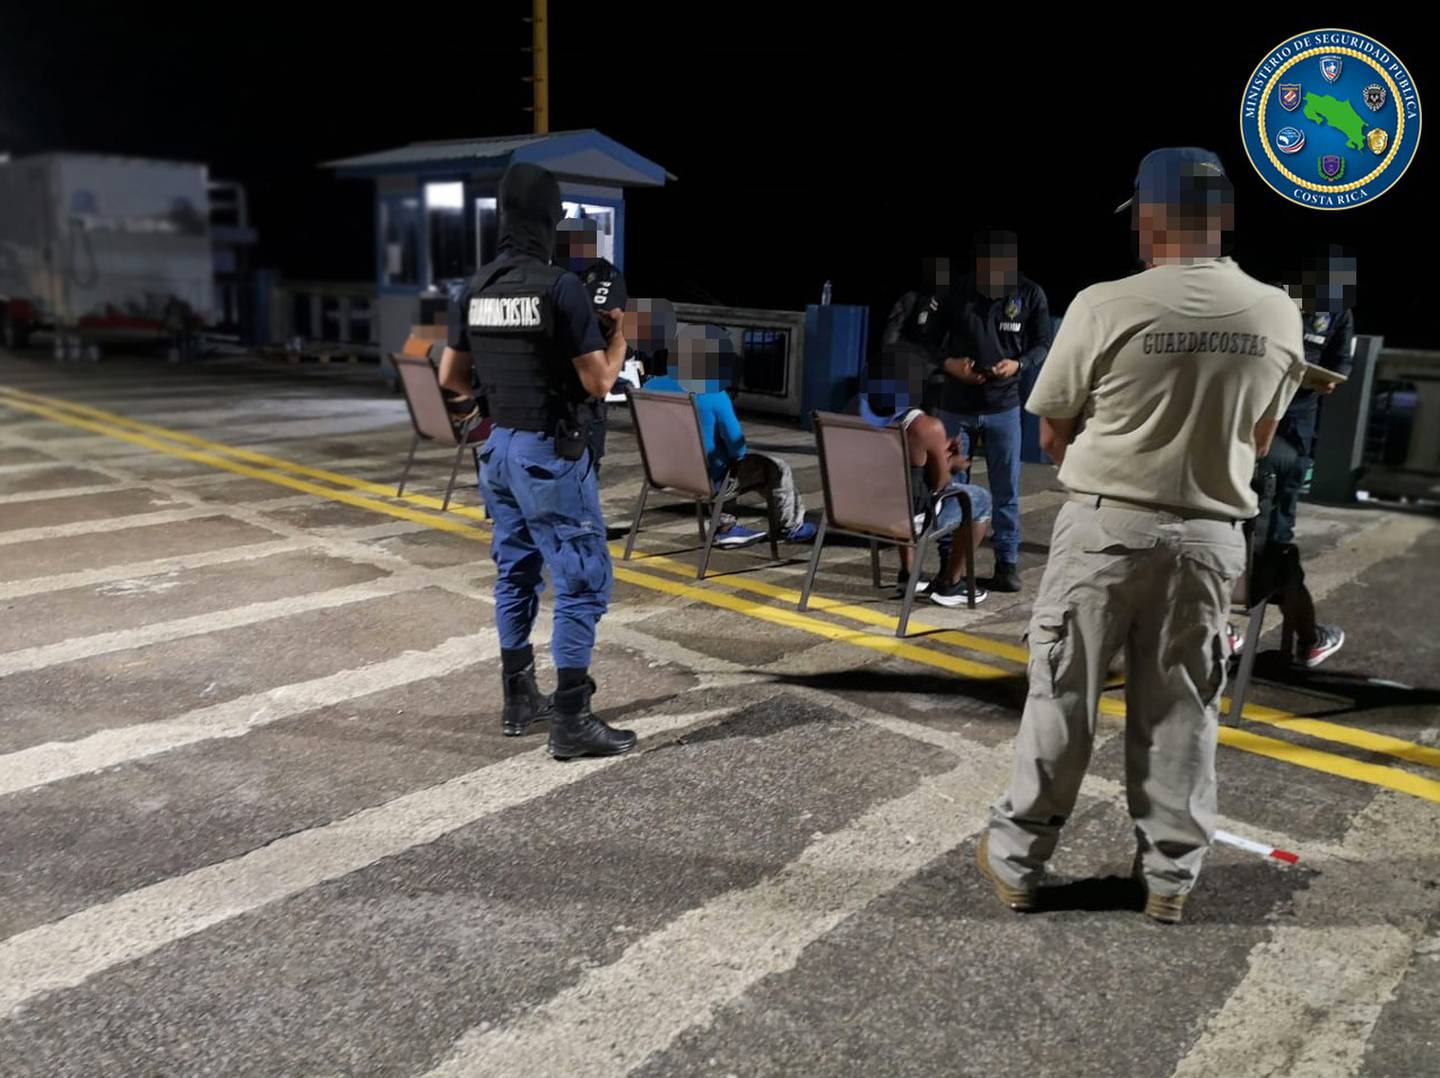 La acción policial se mantuvo hasta altas horas de la noche cuado se trasladó a los ocupantes de la lancha a la Fiscalía de Quepos. Foto: MSP.